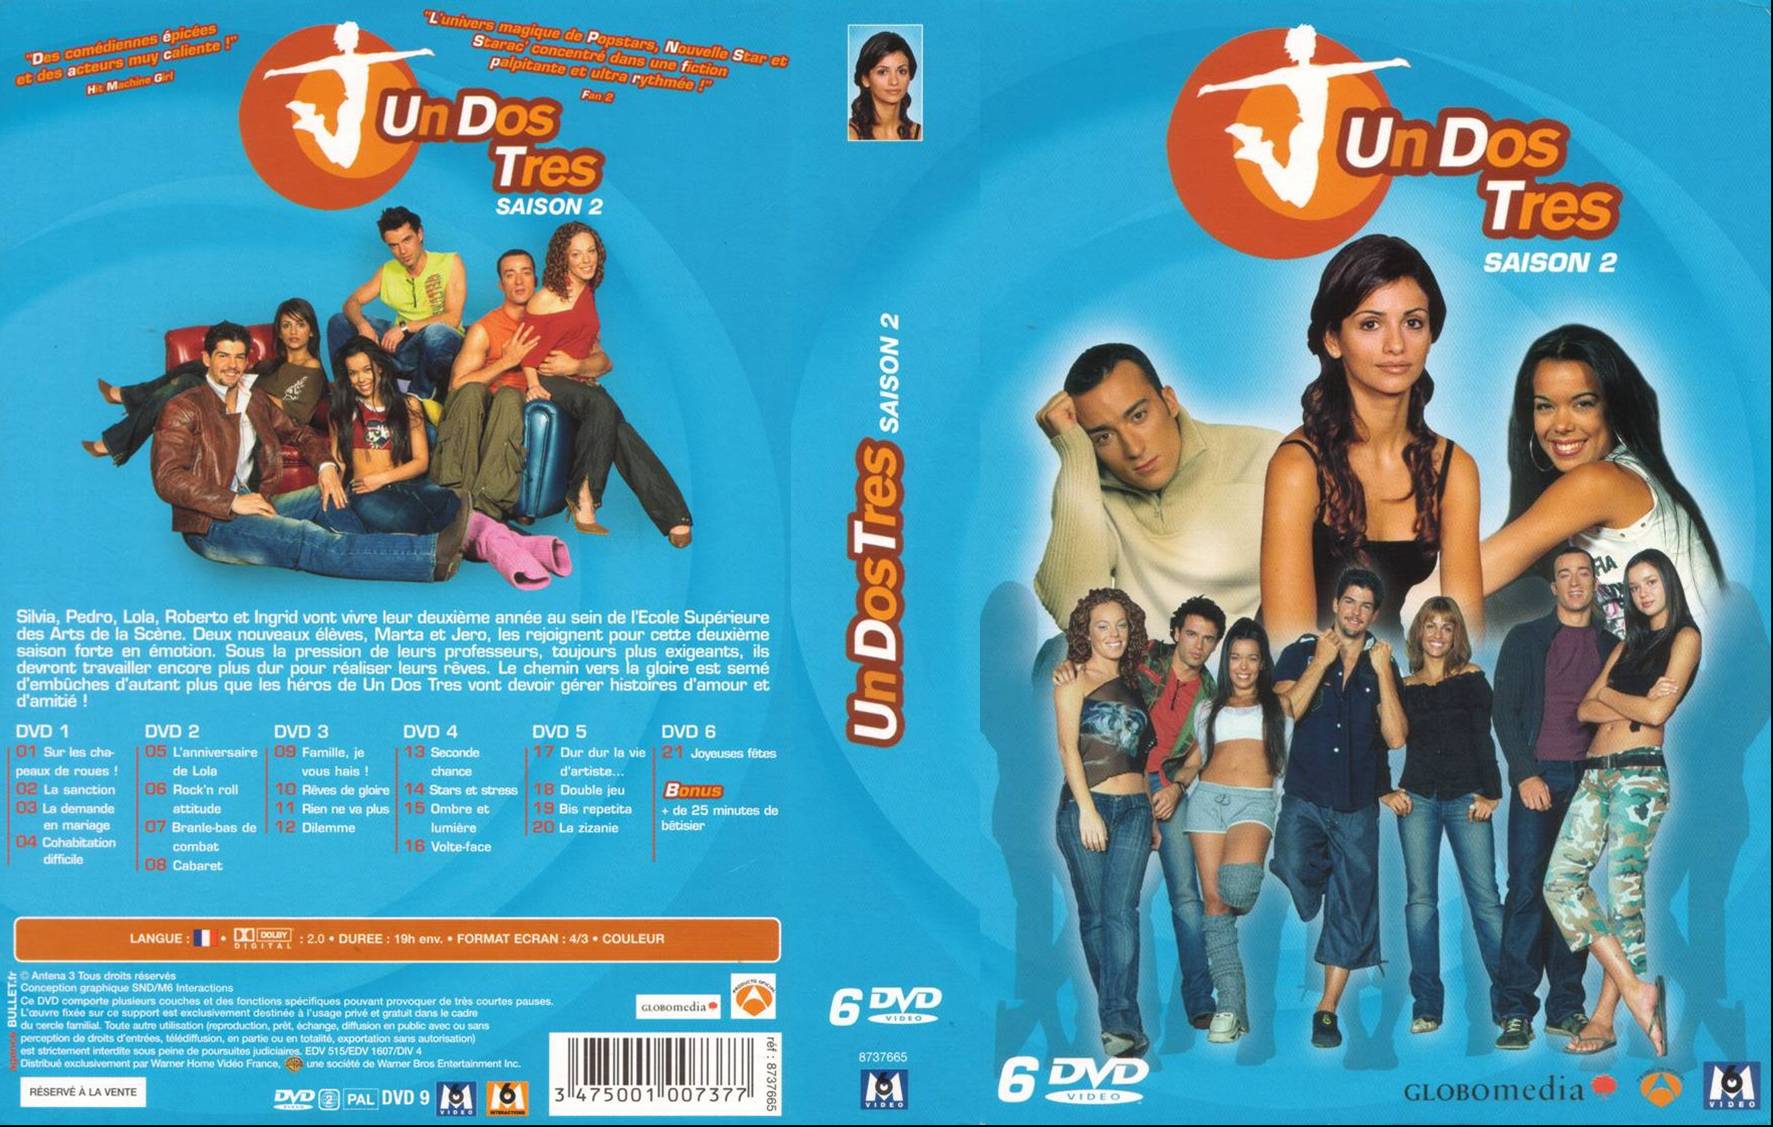 Jaquette DVD Un dos tres saison 2 COFFRET